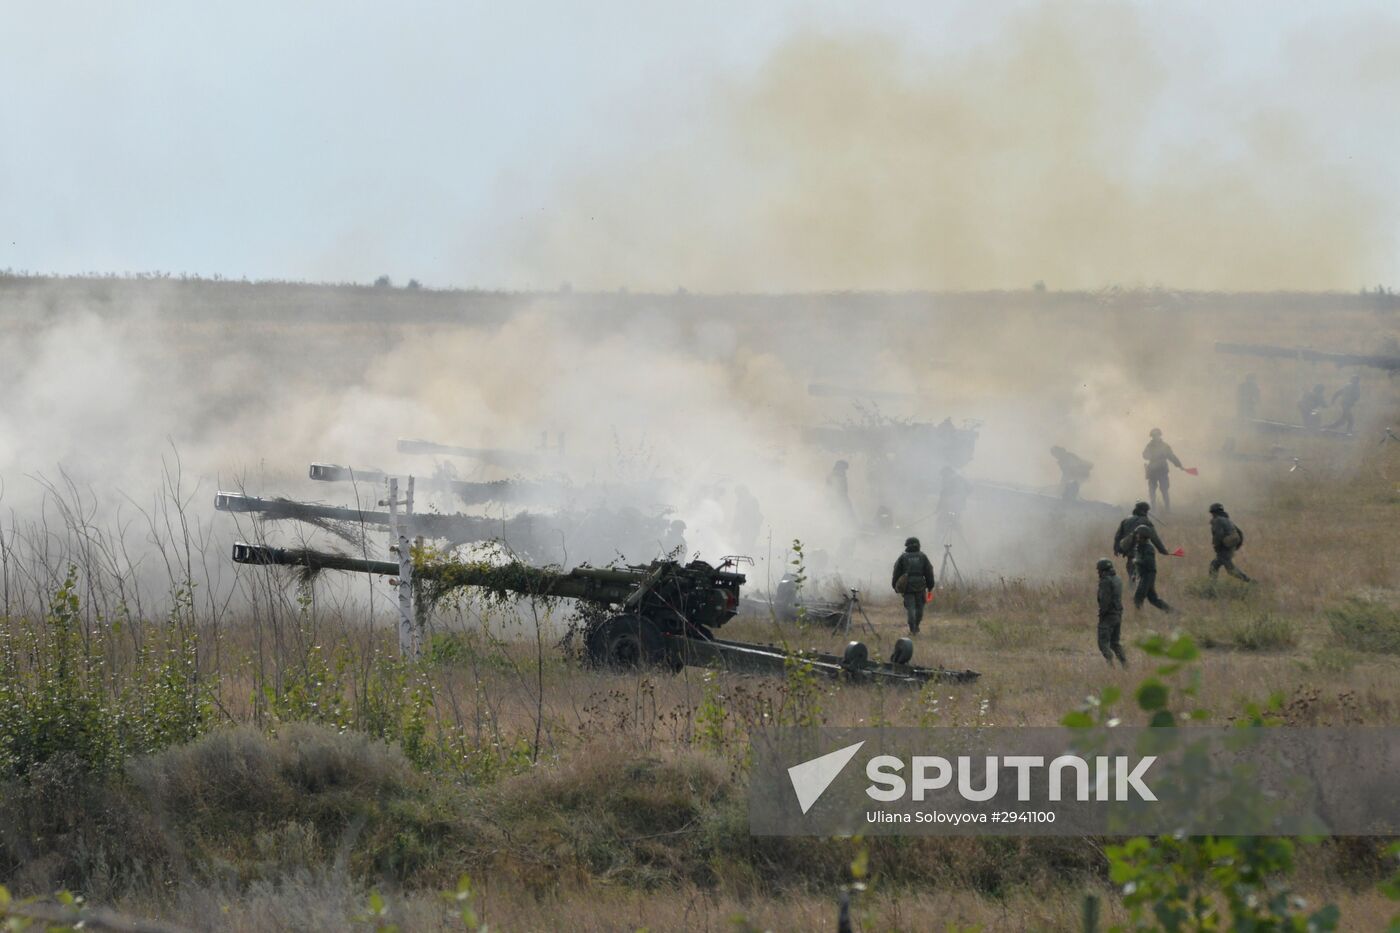 Military drills in Voronezh Region